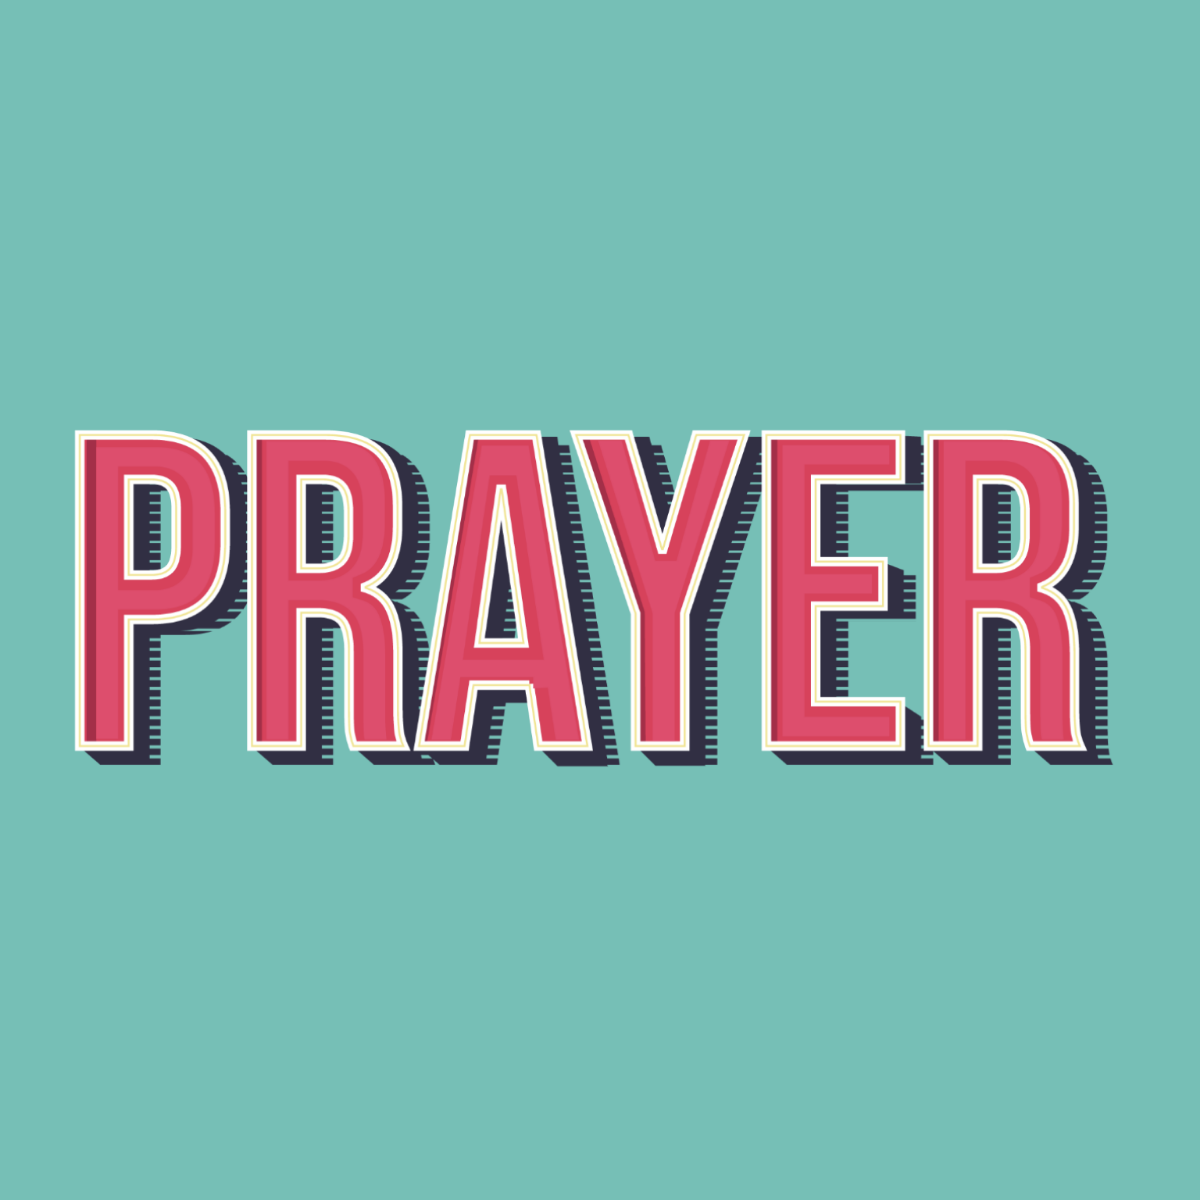 Prayer Text Effect Template